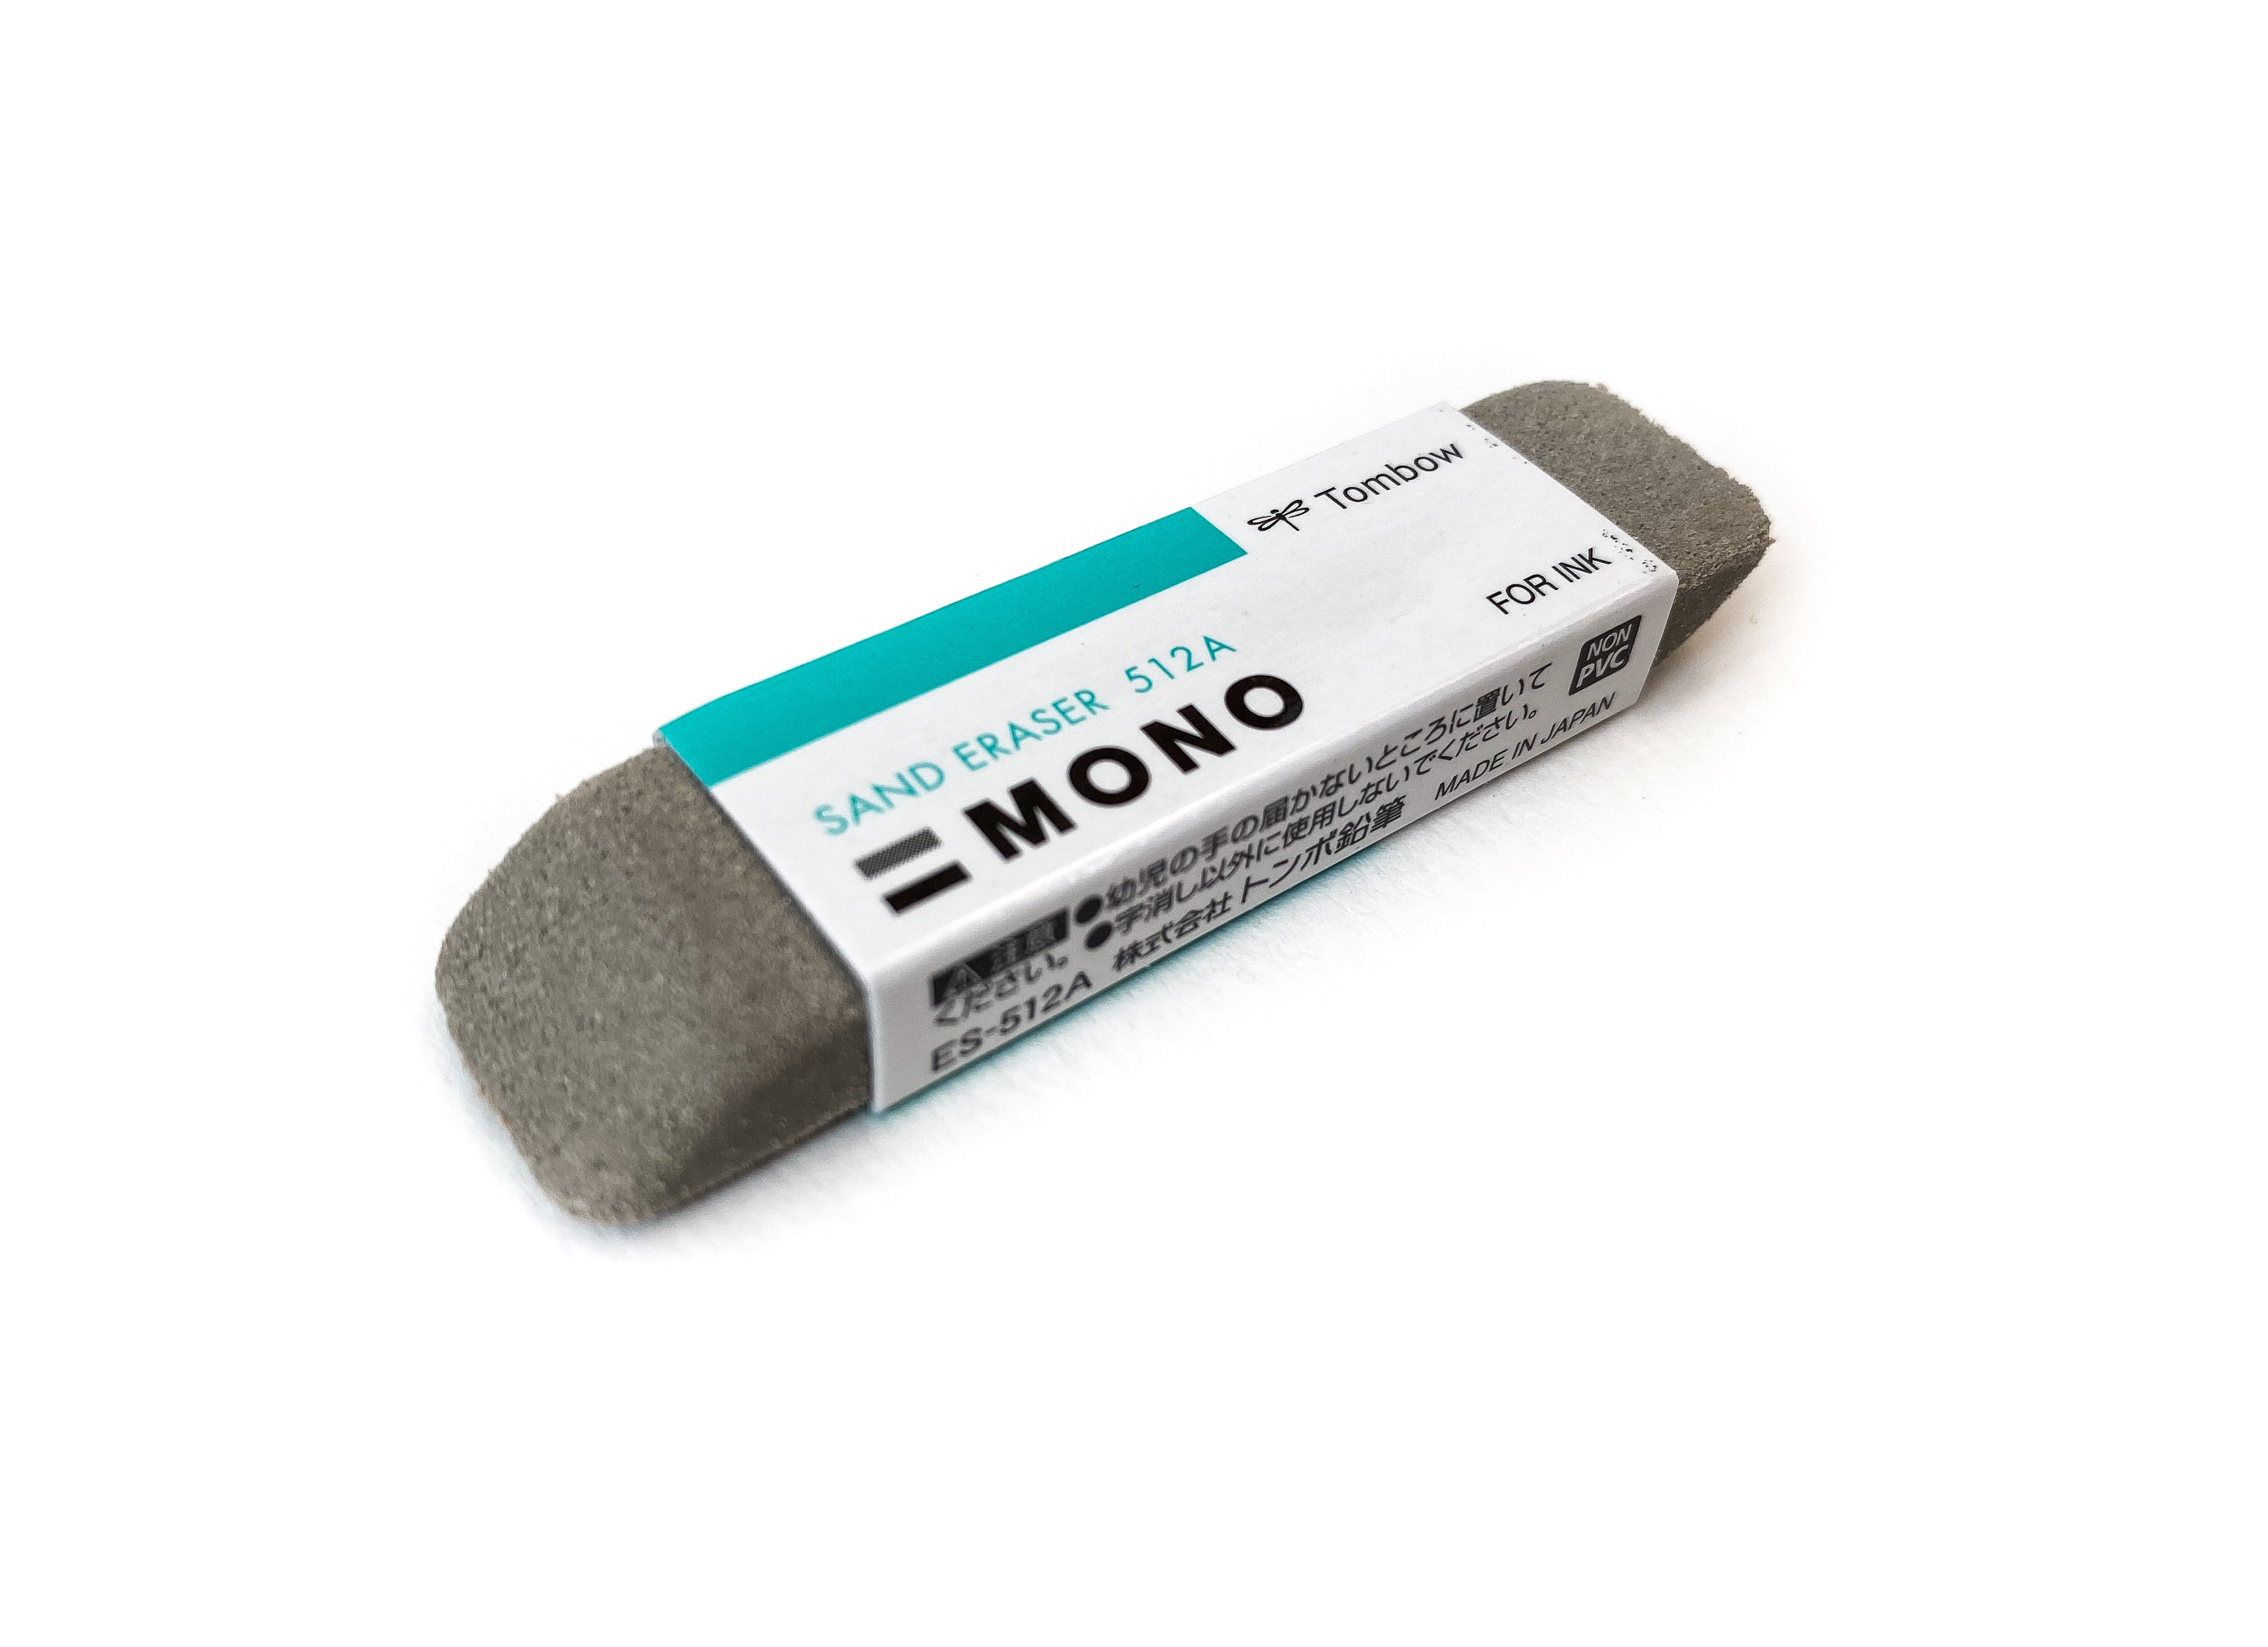 Mono Sand Eraser